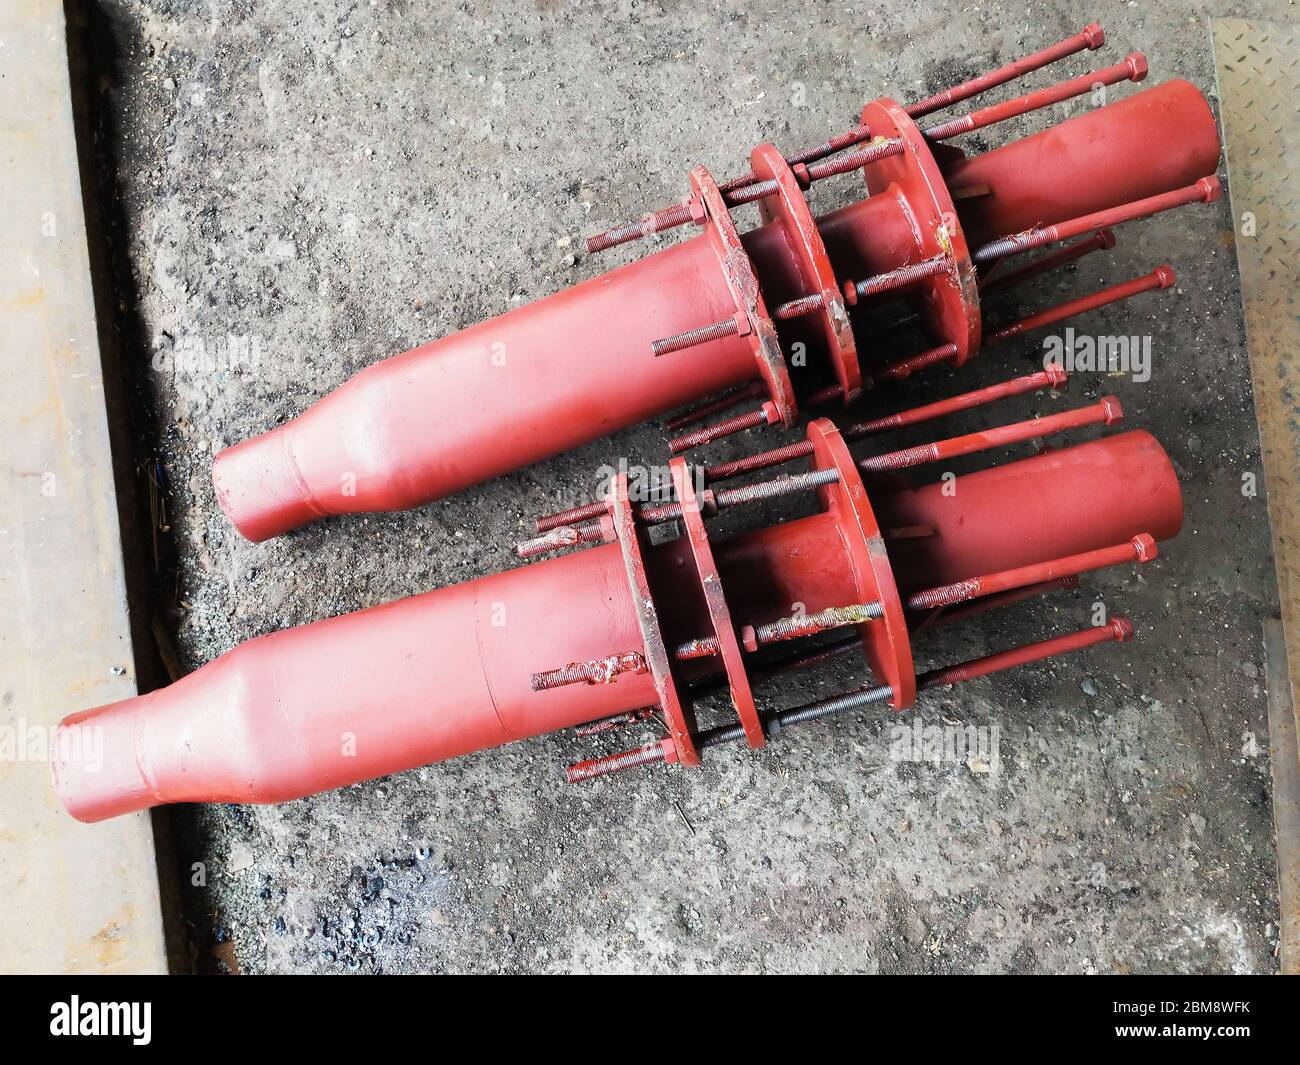 Juntas de sellado de aceite de expansión de tuberías de acero inoxidable pintadas en rojo con varillas de control para tuberías de vapor y calor Foto de stock